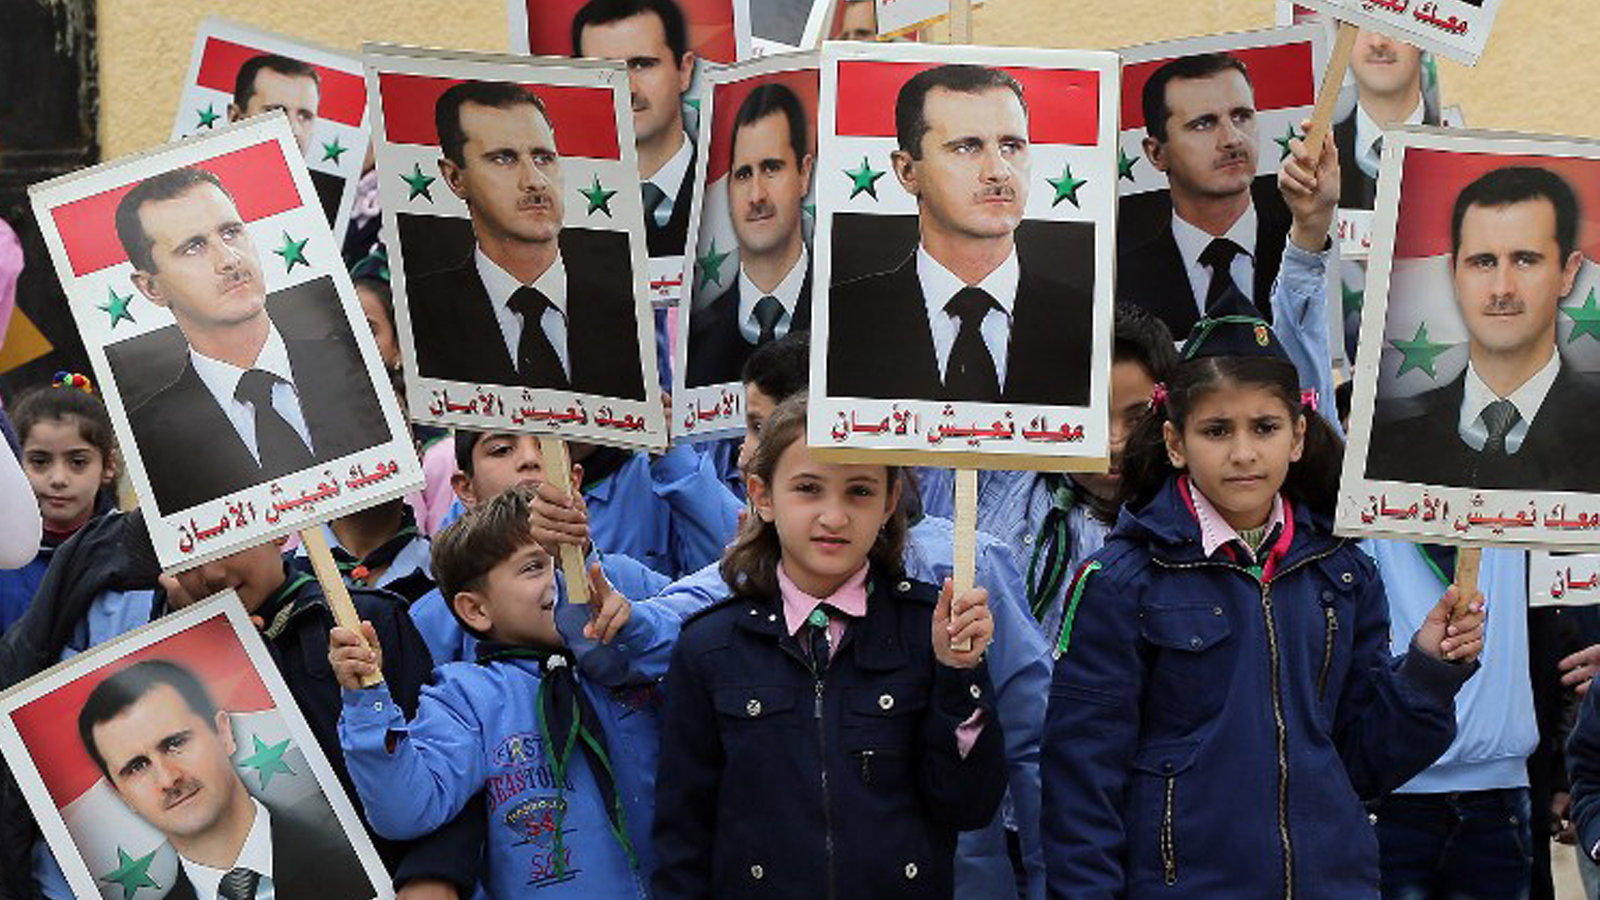 واشنطن "مذهولة" من مجزرة الرقة..وموسكو تدعم الأسد ضد "الإرهاب"